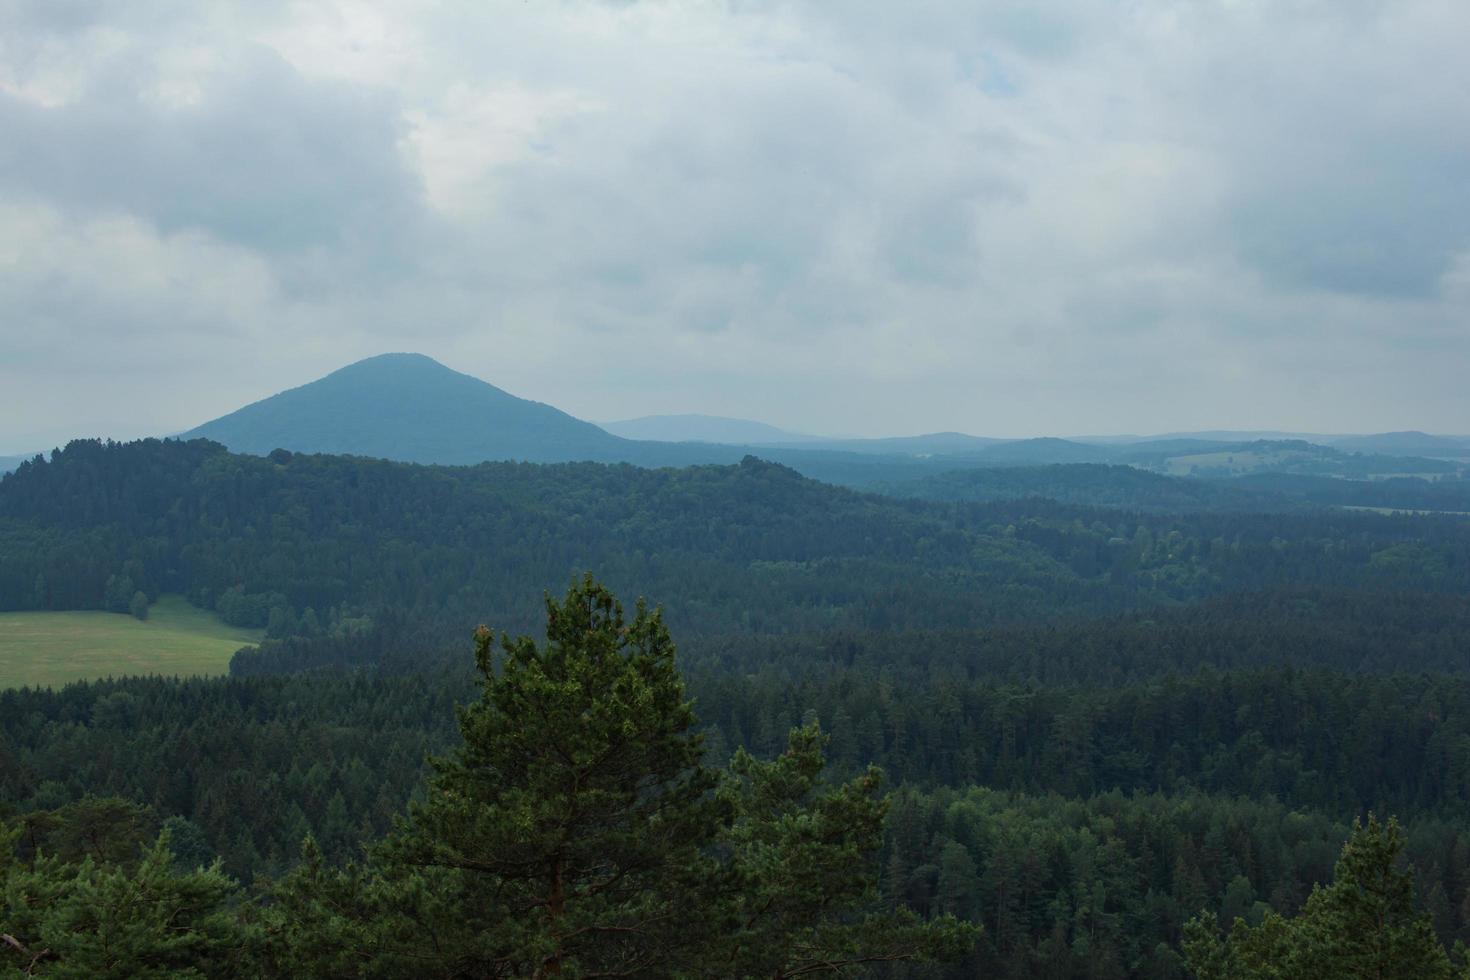 landschaft in den bergen im nationalpark der tschechischen schweiz, kiefernwald und felsen foto